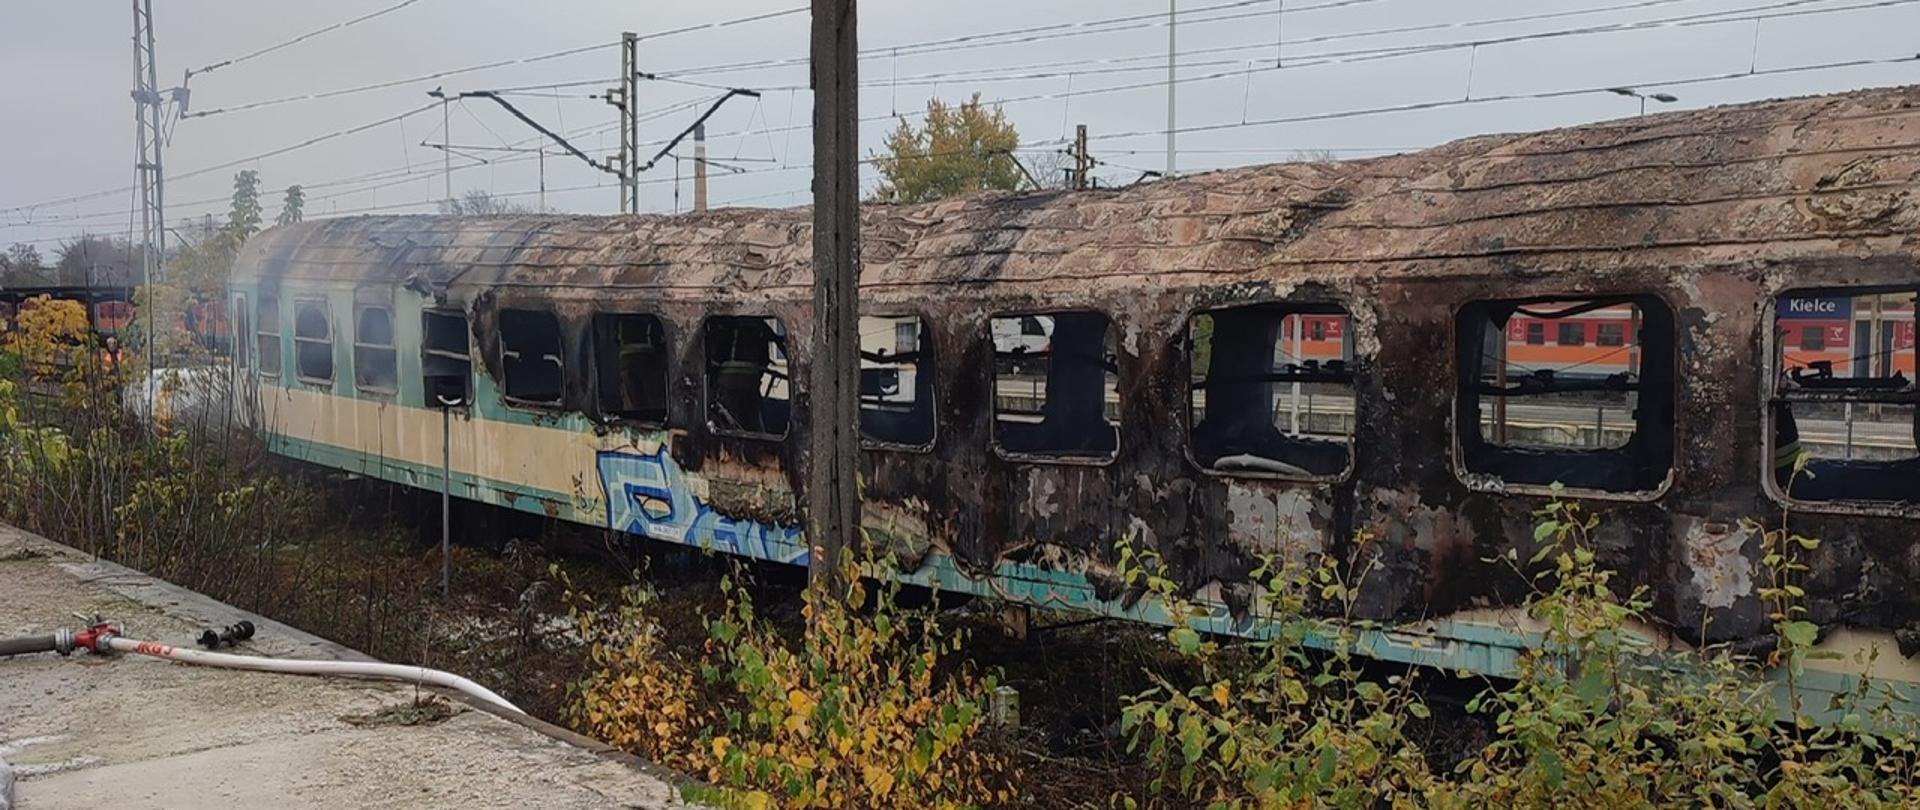 Zdjęcie przedstawia spalony wagon osoby stojący na bocznicy kolejowej